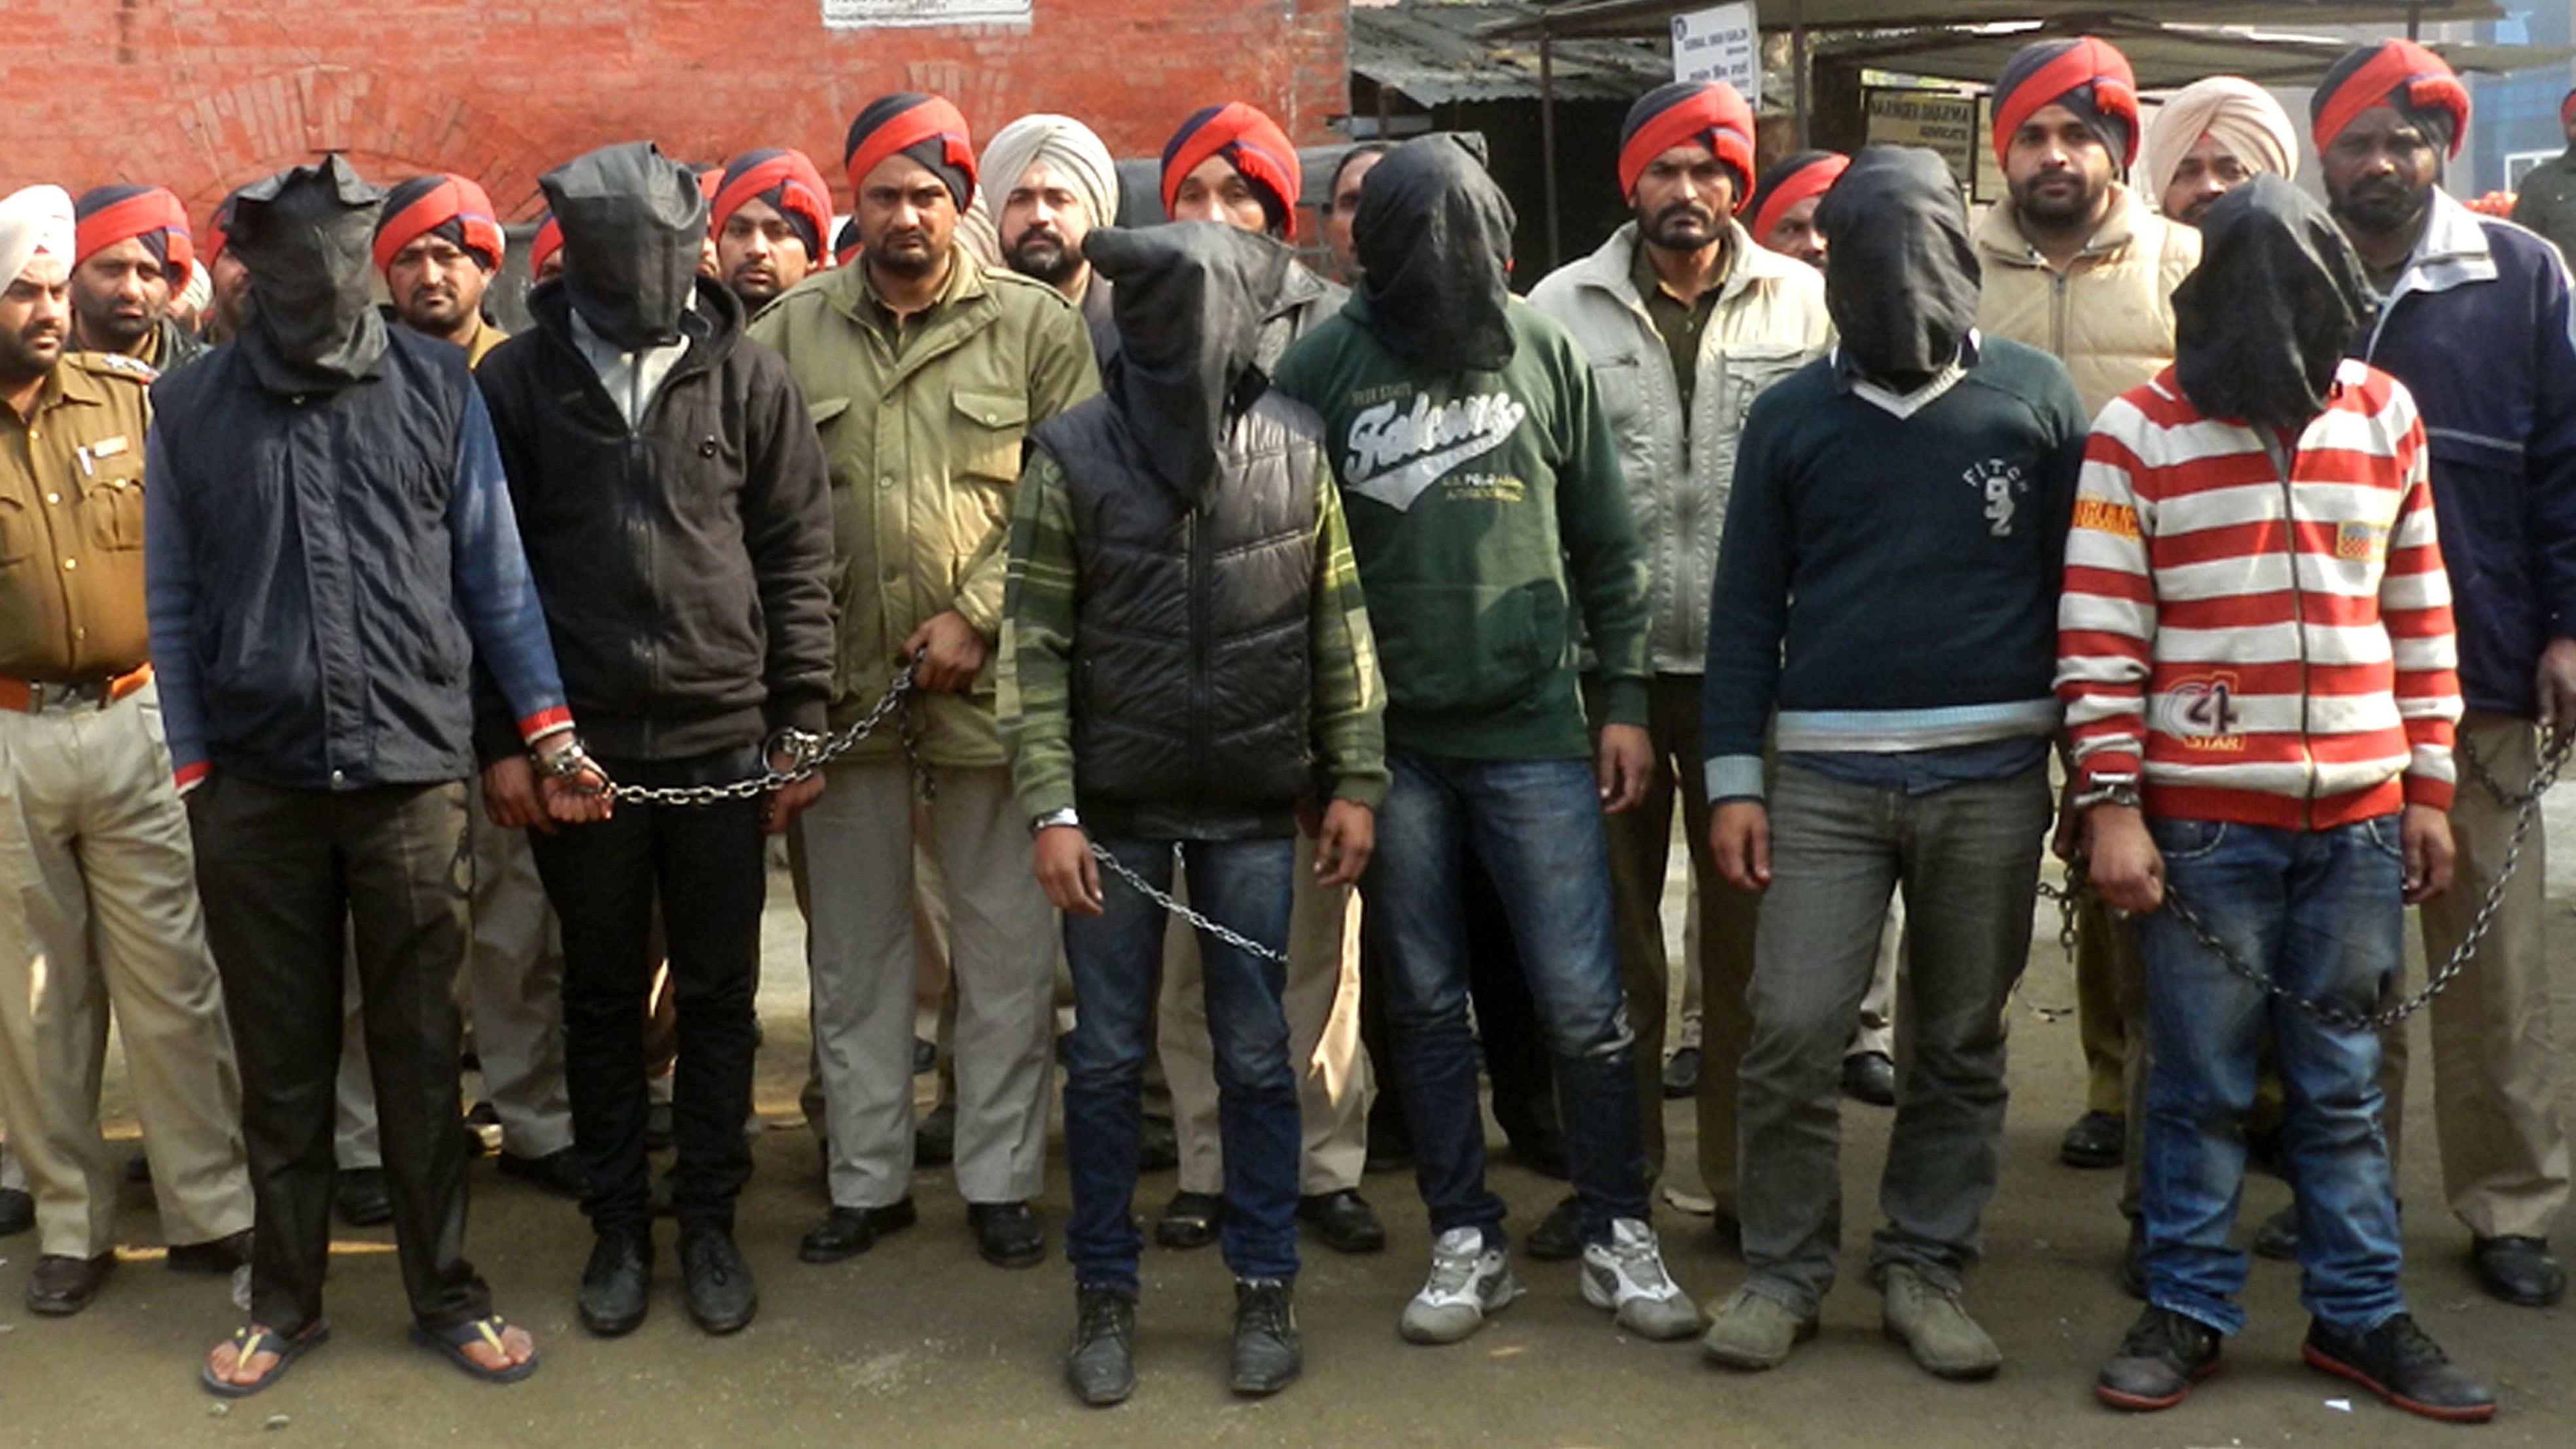 3936px x 2214px - Police: 7 men gang rape bus passenger in India | CNN